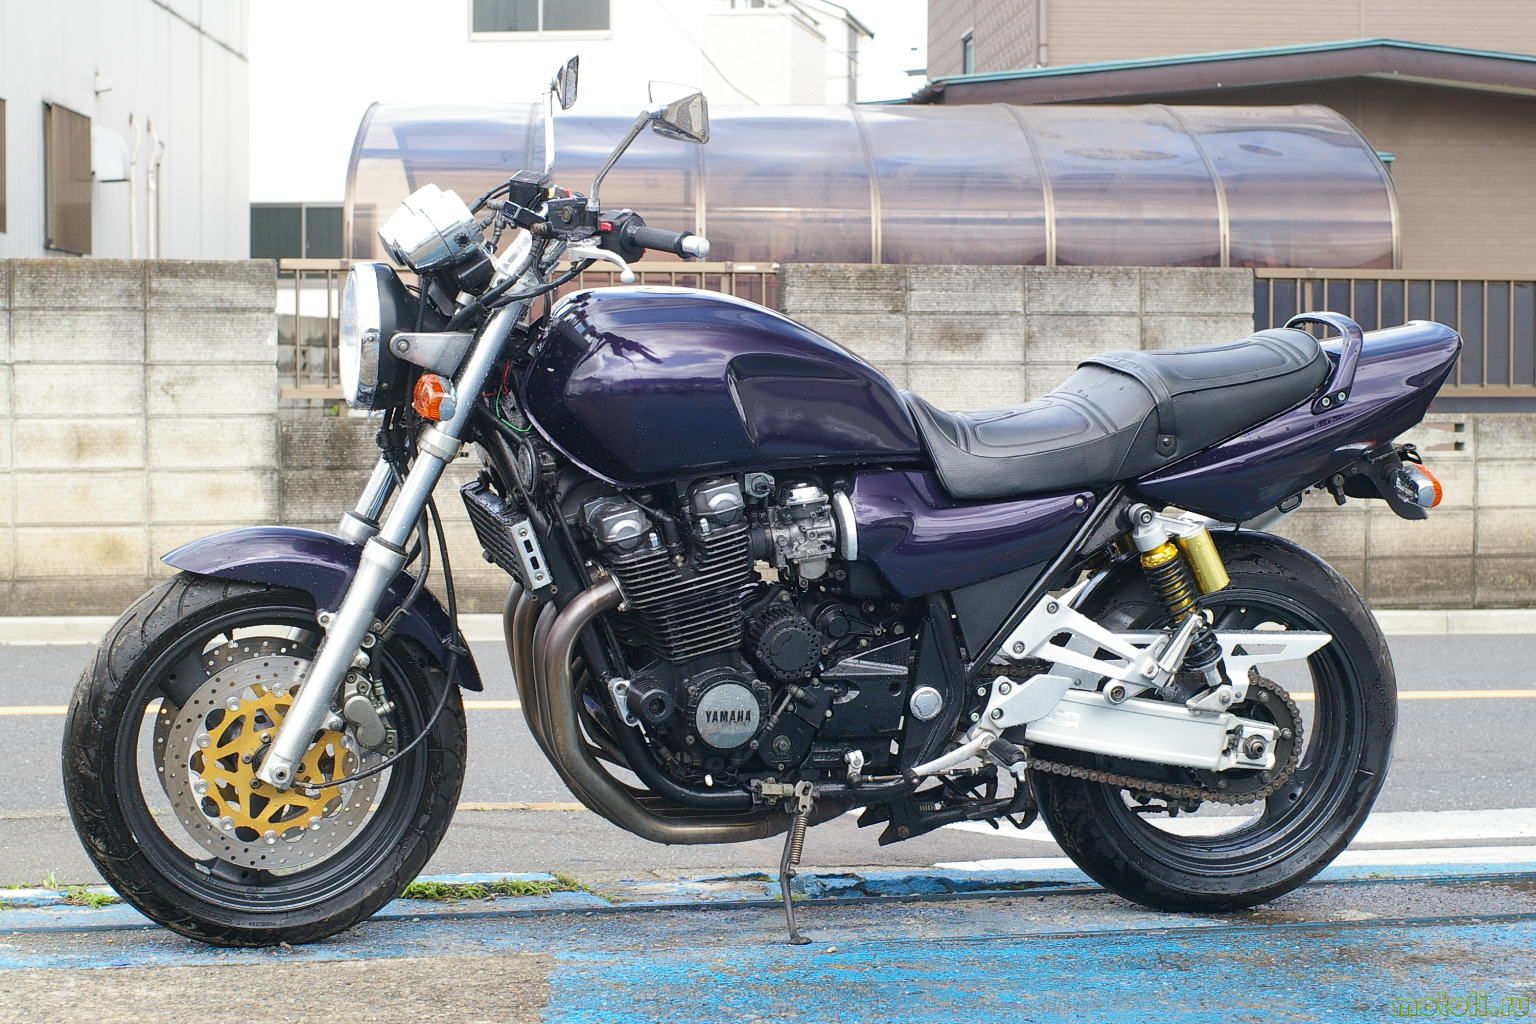 Yamaha srx 400 — популярный легкий мотоцикл